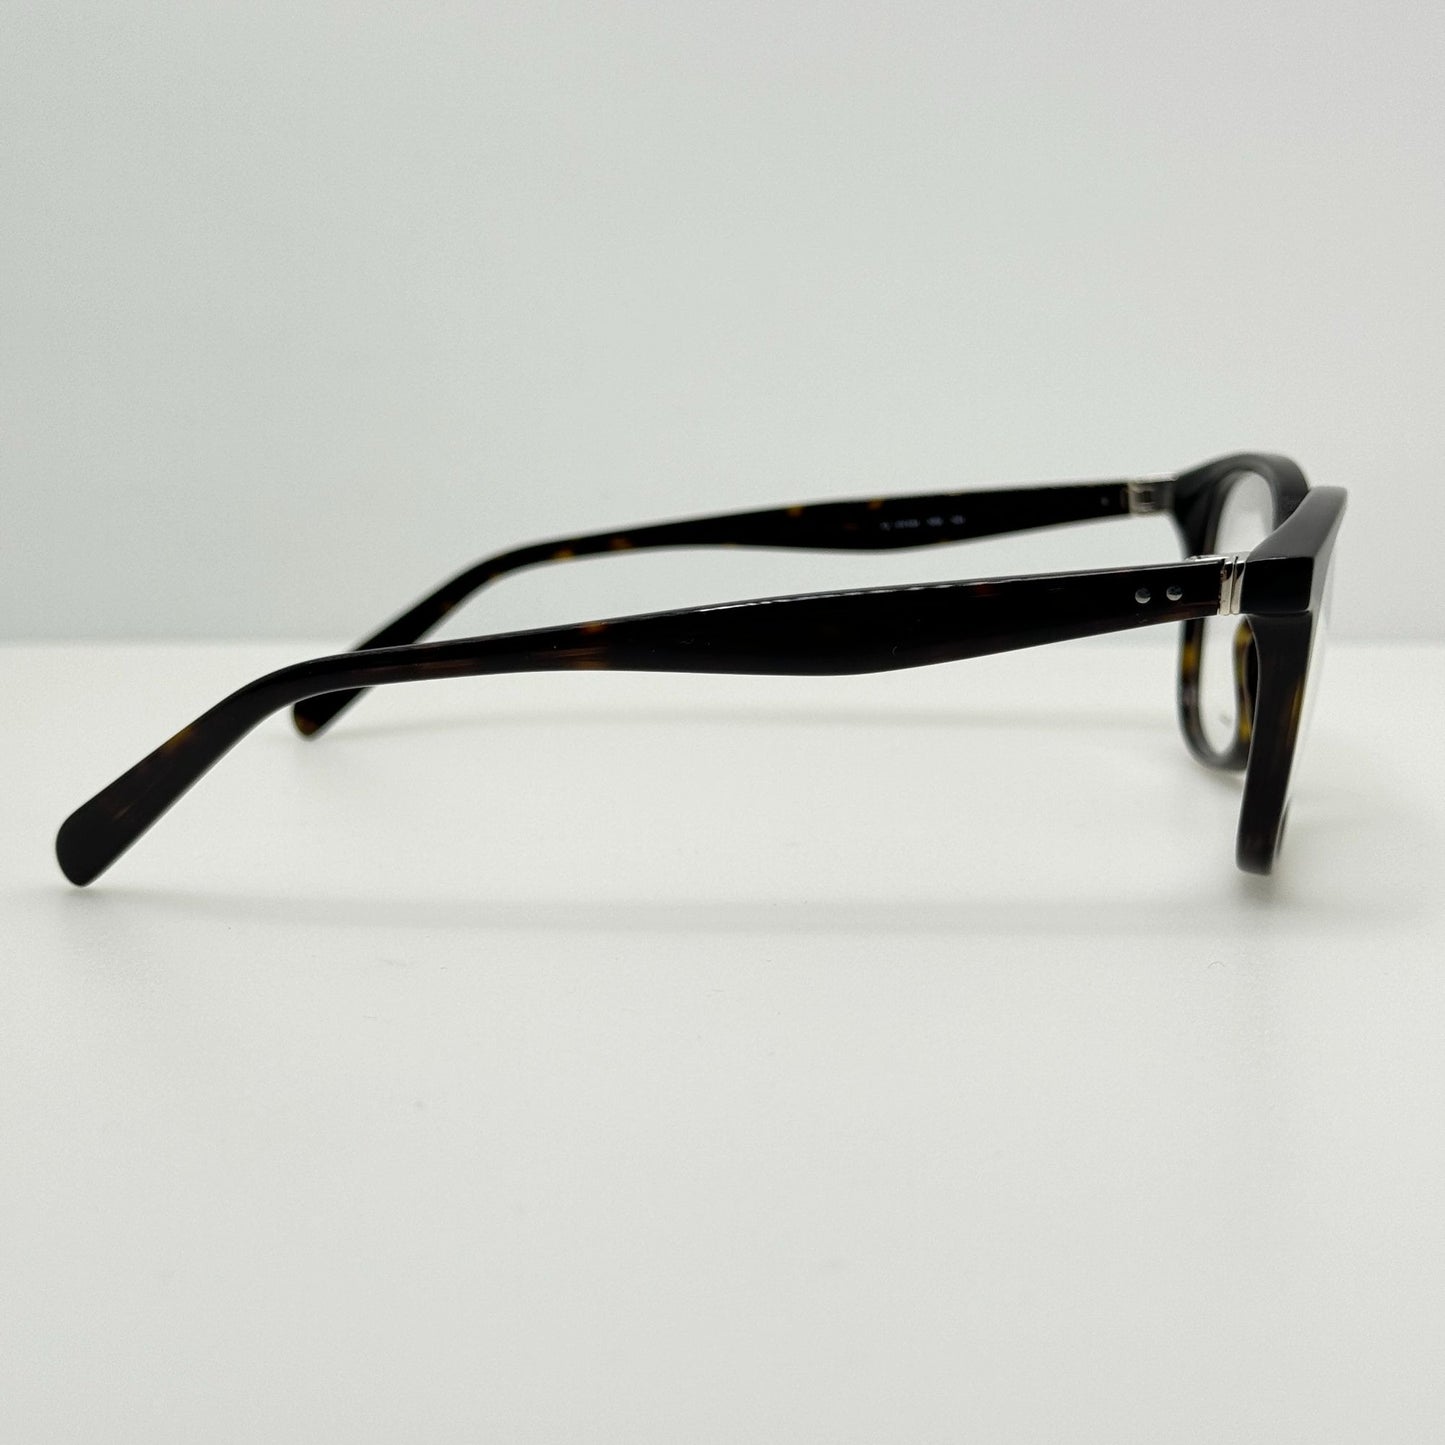 Celine Eyeglasses Eye Glasses Frames CL 41346 086 51-18-145